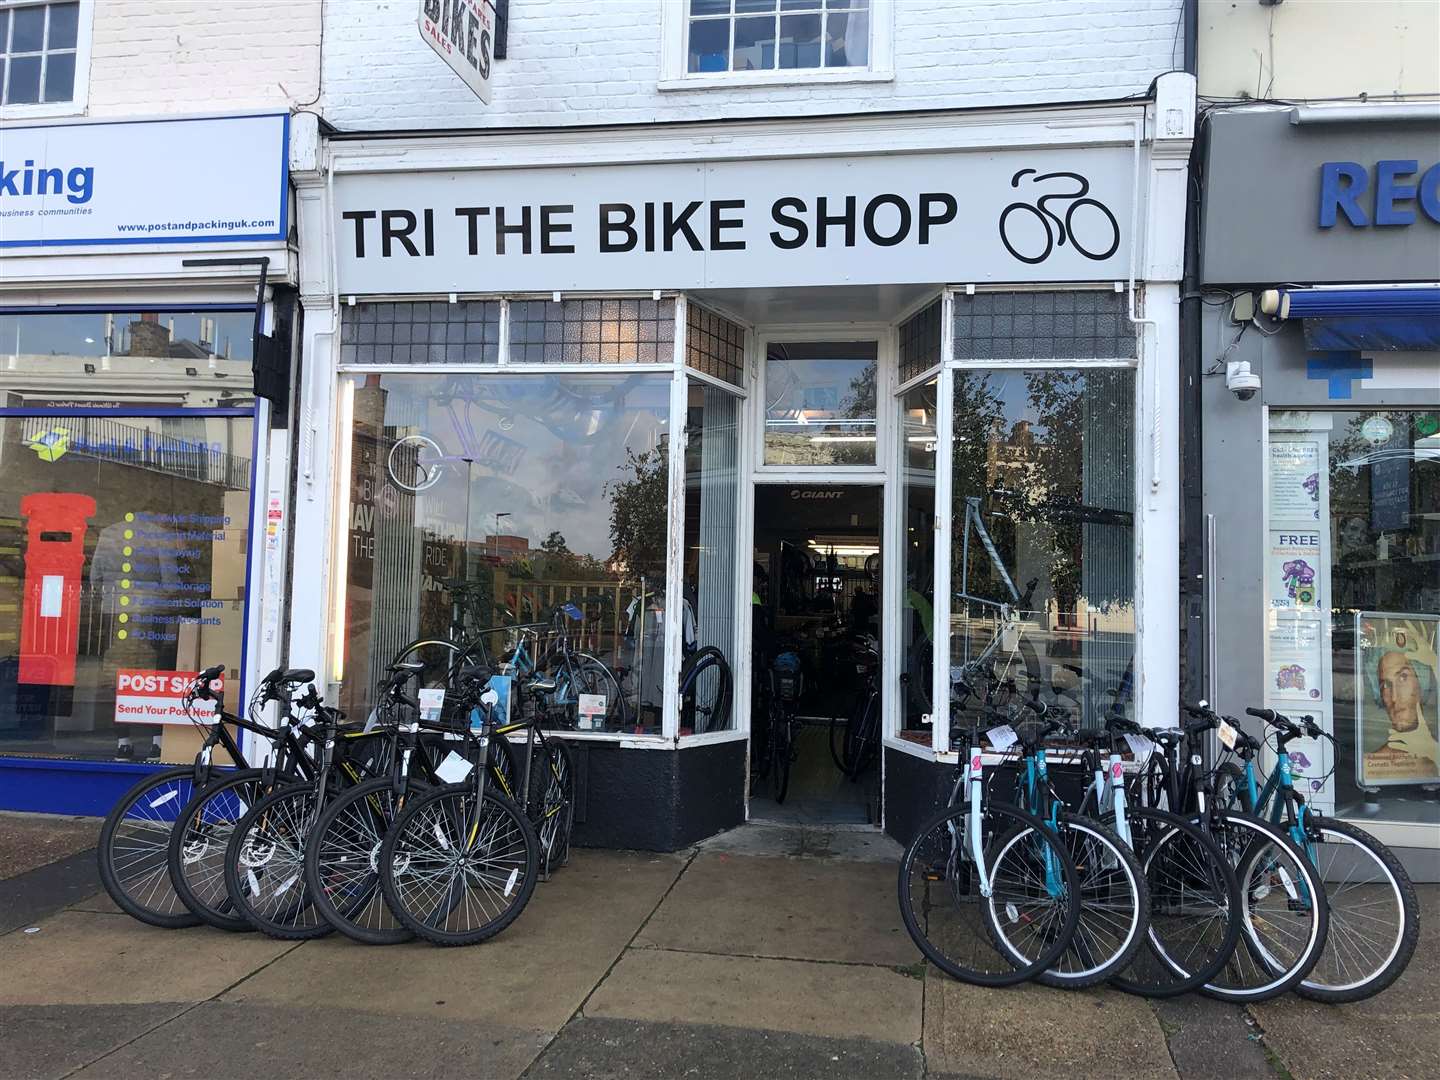 Tri the Bike Shop closed in 2022